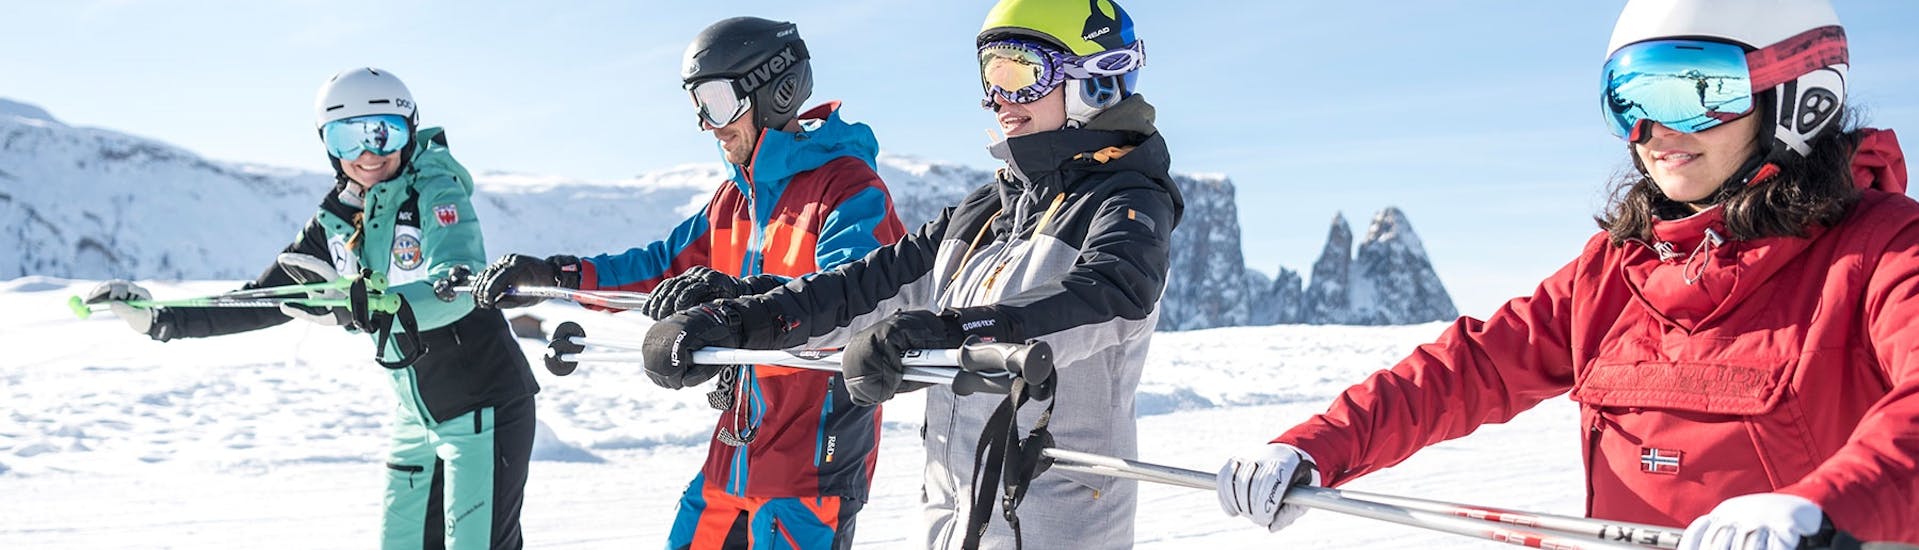 Erwachsene halten sich an Stange an beim Skikurs für Erwachsene für alle Levels mit Skischule Schlern 3000.